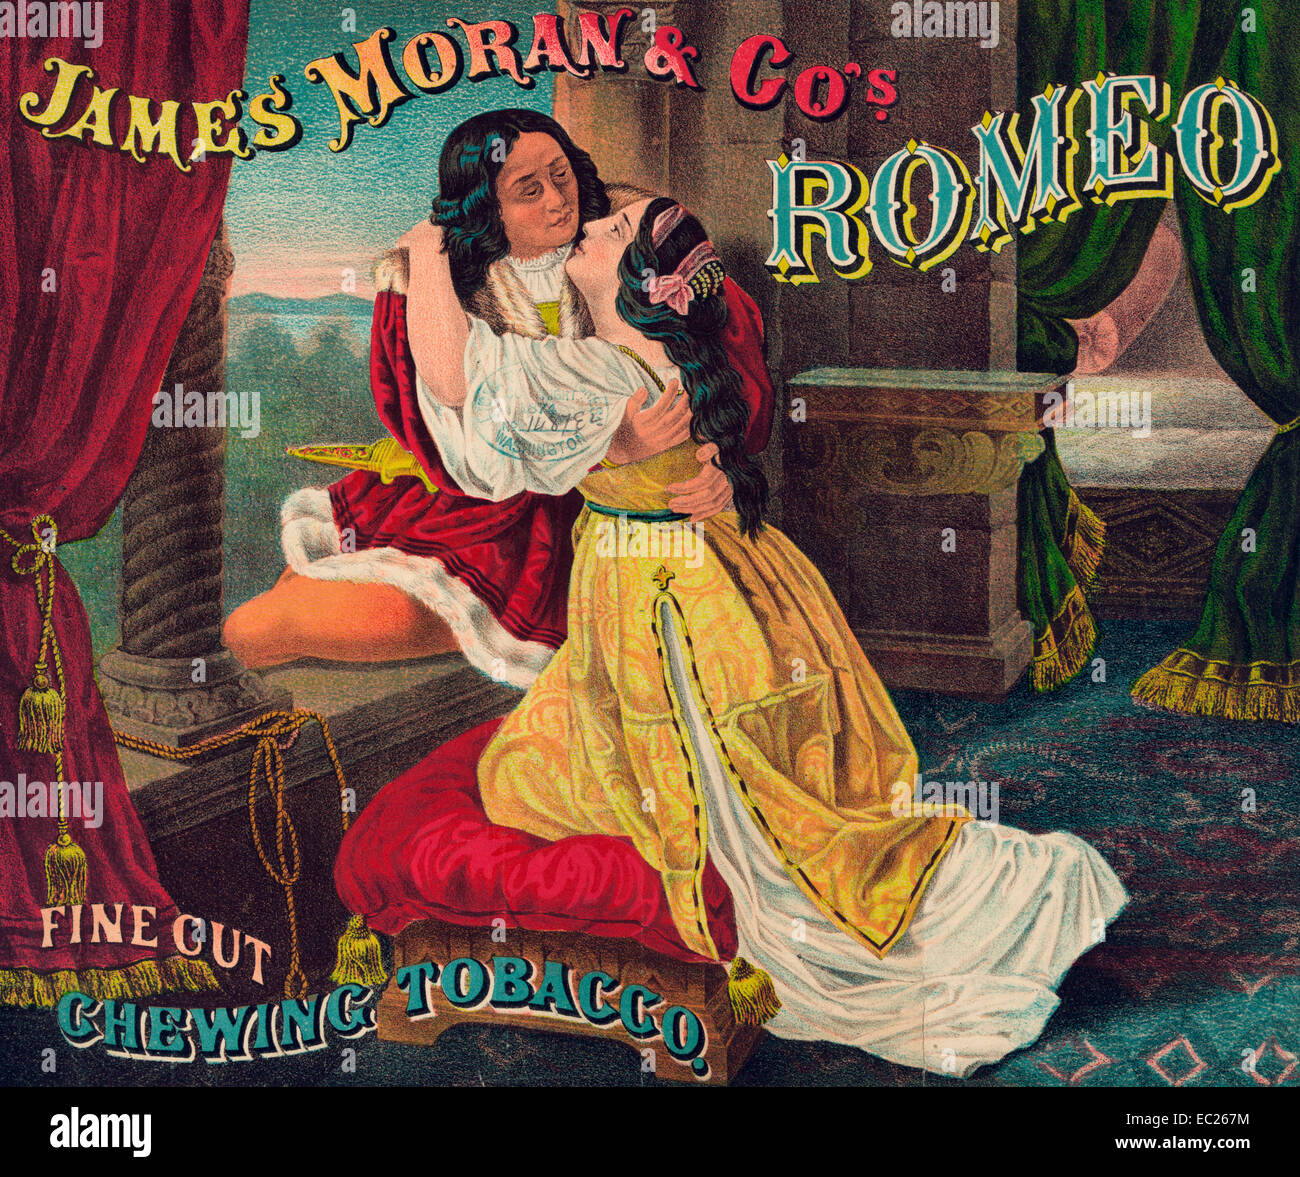 James Moran & Co. de Romeo, corte fino, mascar tabaco - Resumen: muestra la etiqueta del paquete de tabaco Romeo y Julieta abarcando, por una ventana abierta, como son que se despidan, 1874 Foto de stock